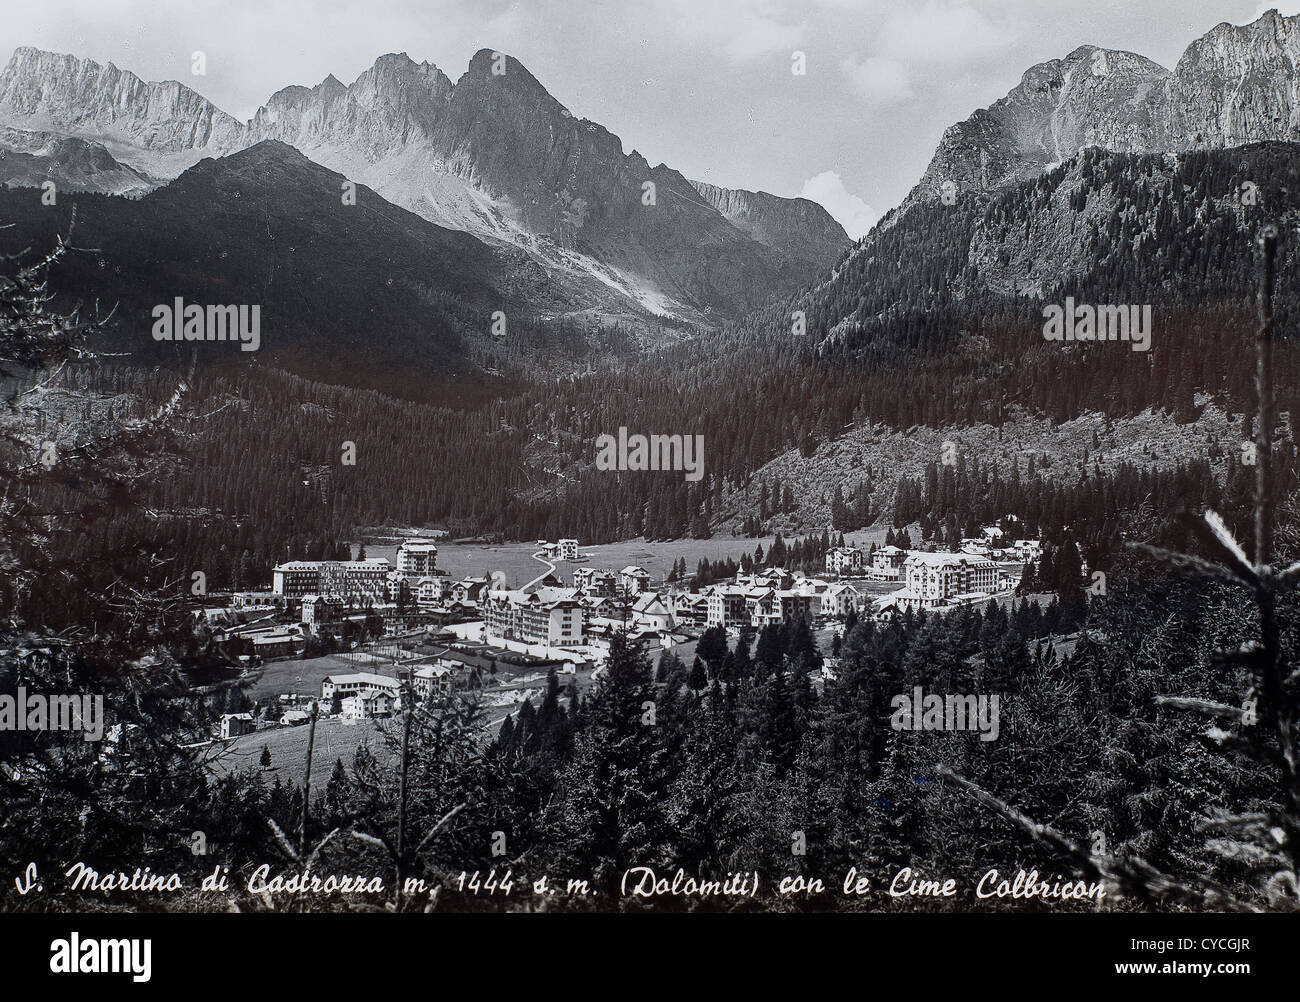 Una vista di San Martino di Castrozza in una vecchia cartolina Foto Stock